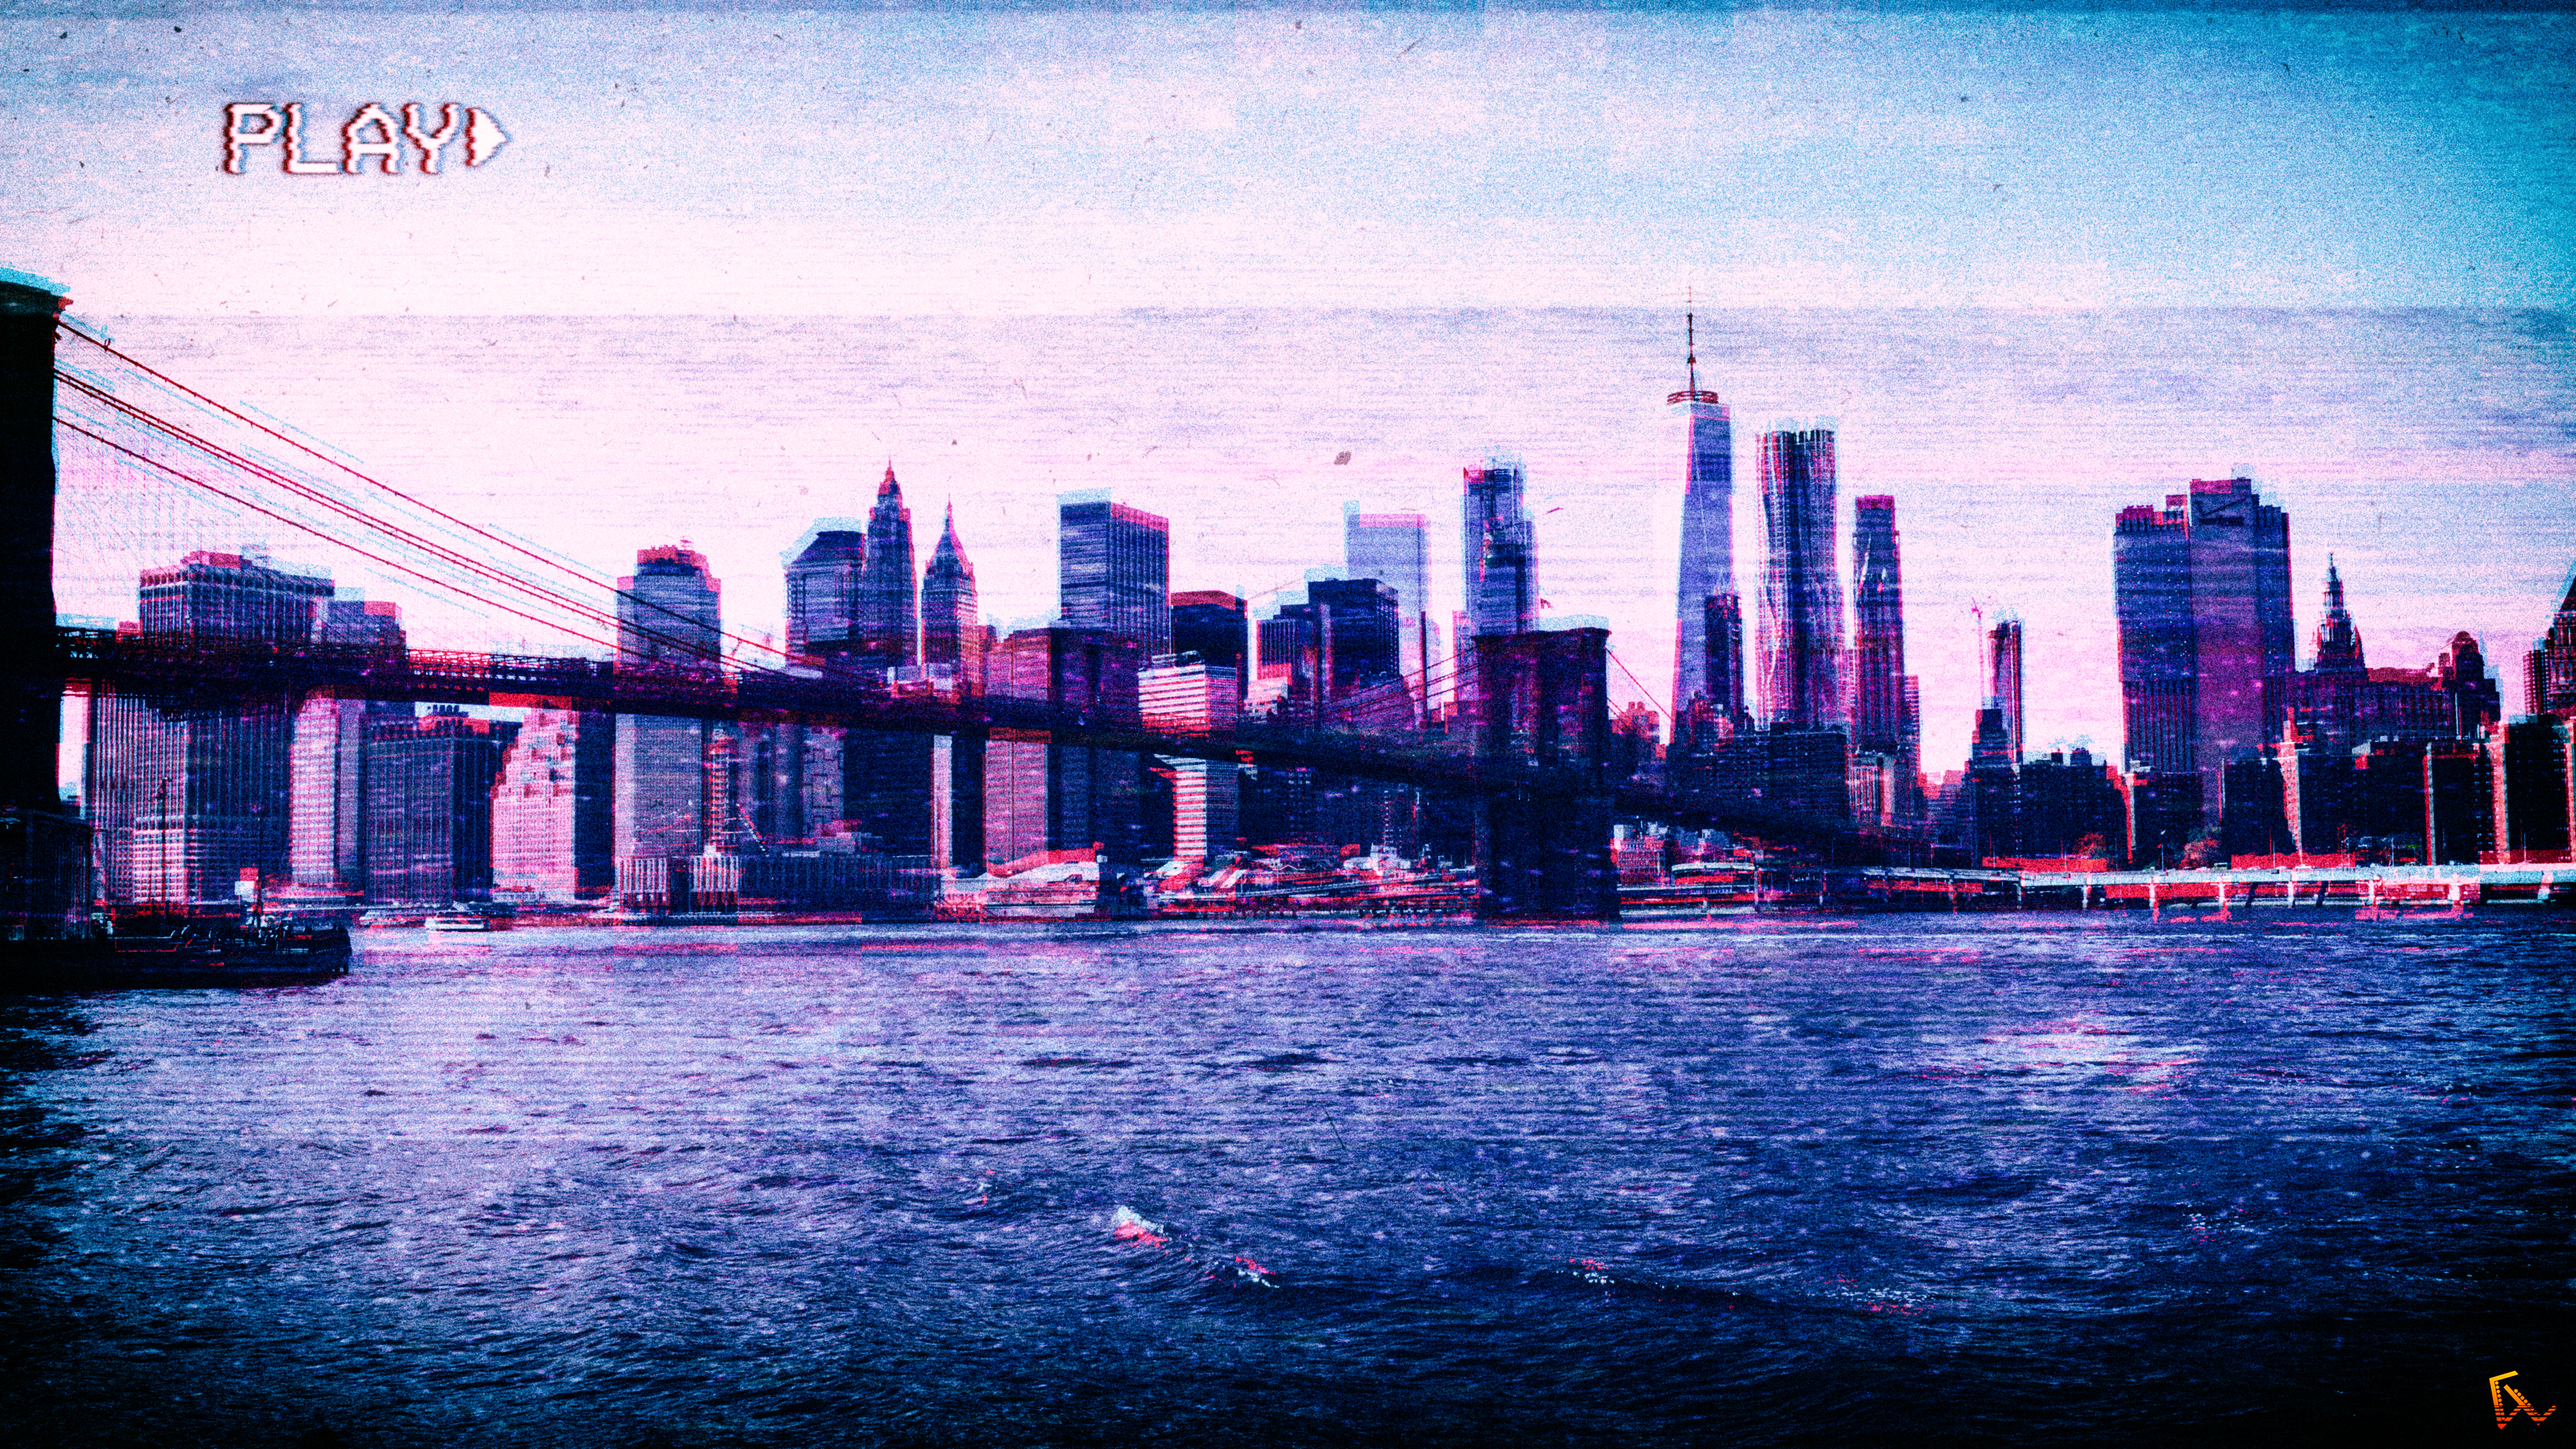 General 3840x2160 New York City VHS vaporwave photoshopped glitch art landscape